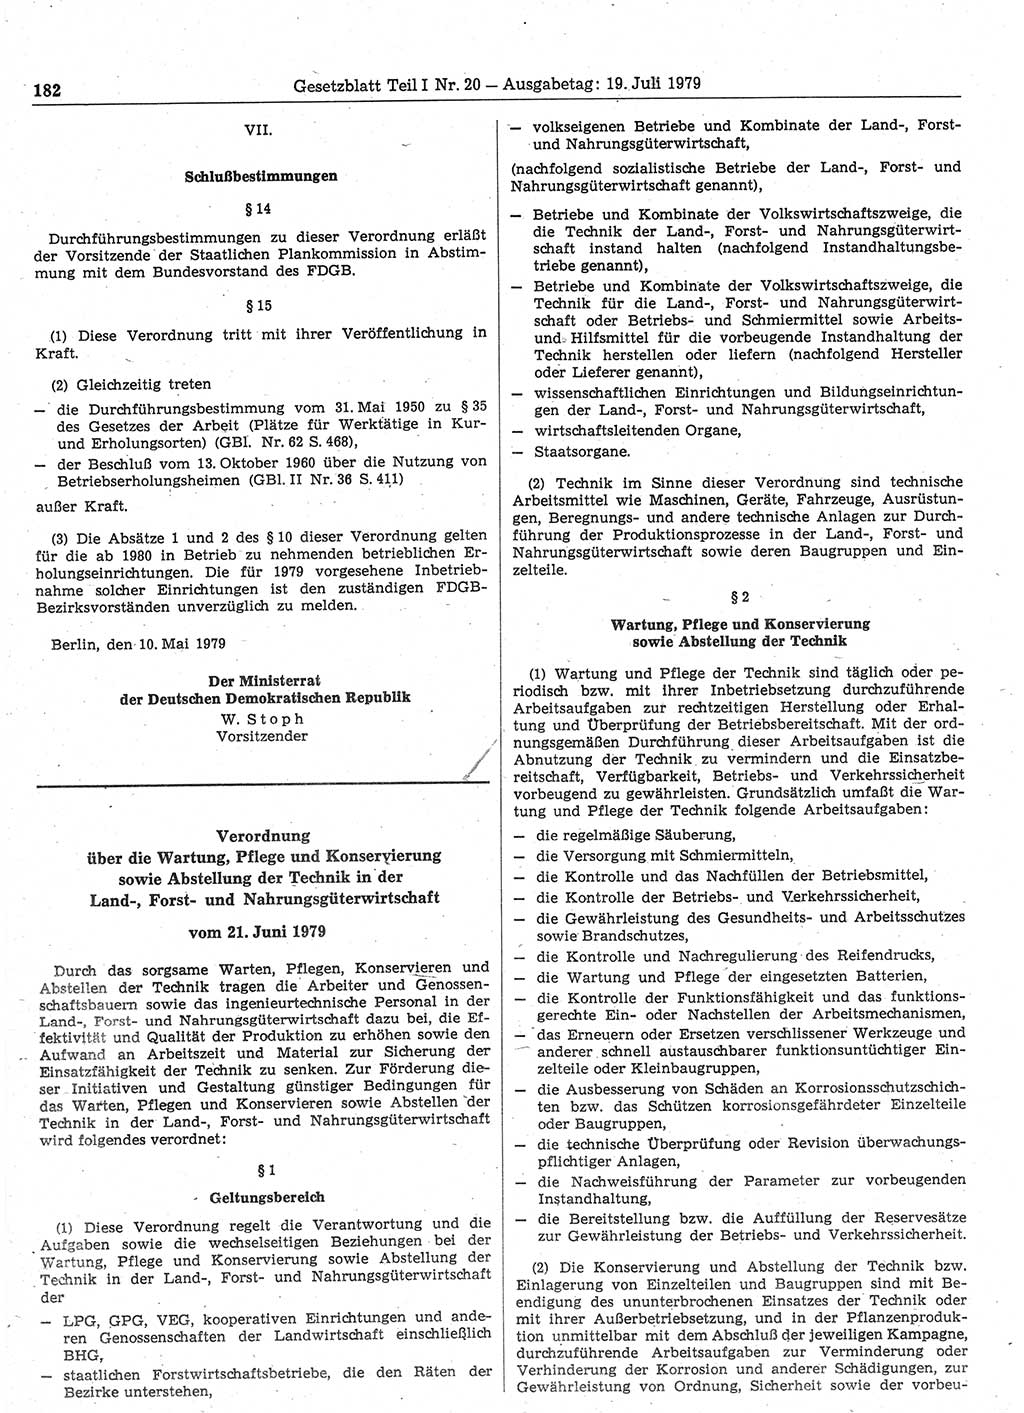 Gesetzblatt (GBl.) der Deutschen Demokratischen Republik (DDR) Teil Ⅰ 1979, Seite 182 (GBl. DDR Ⅰ 1979, S. 182)